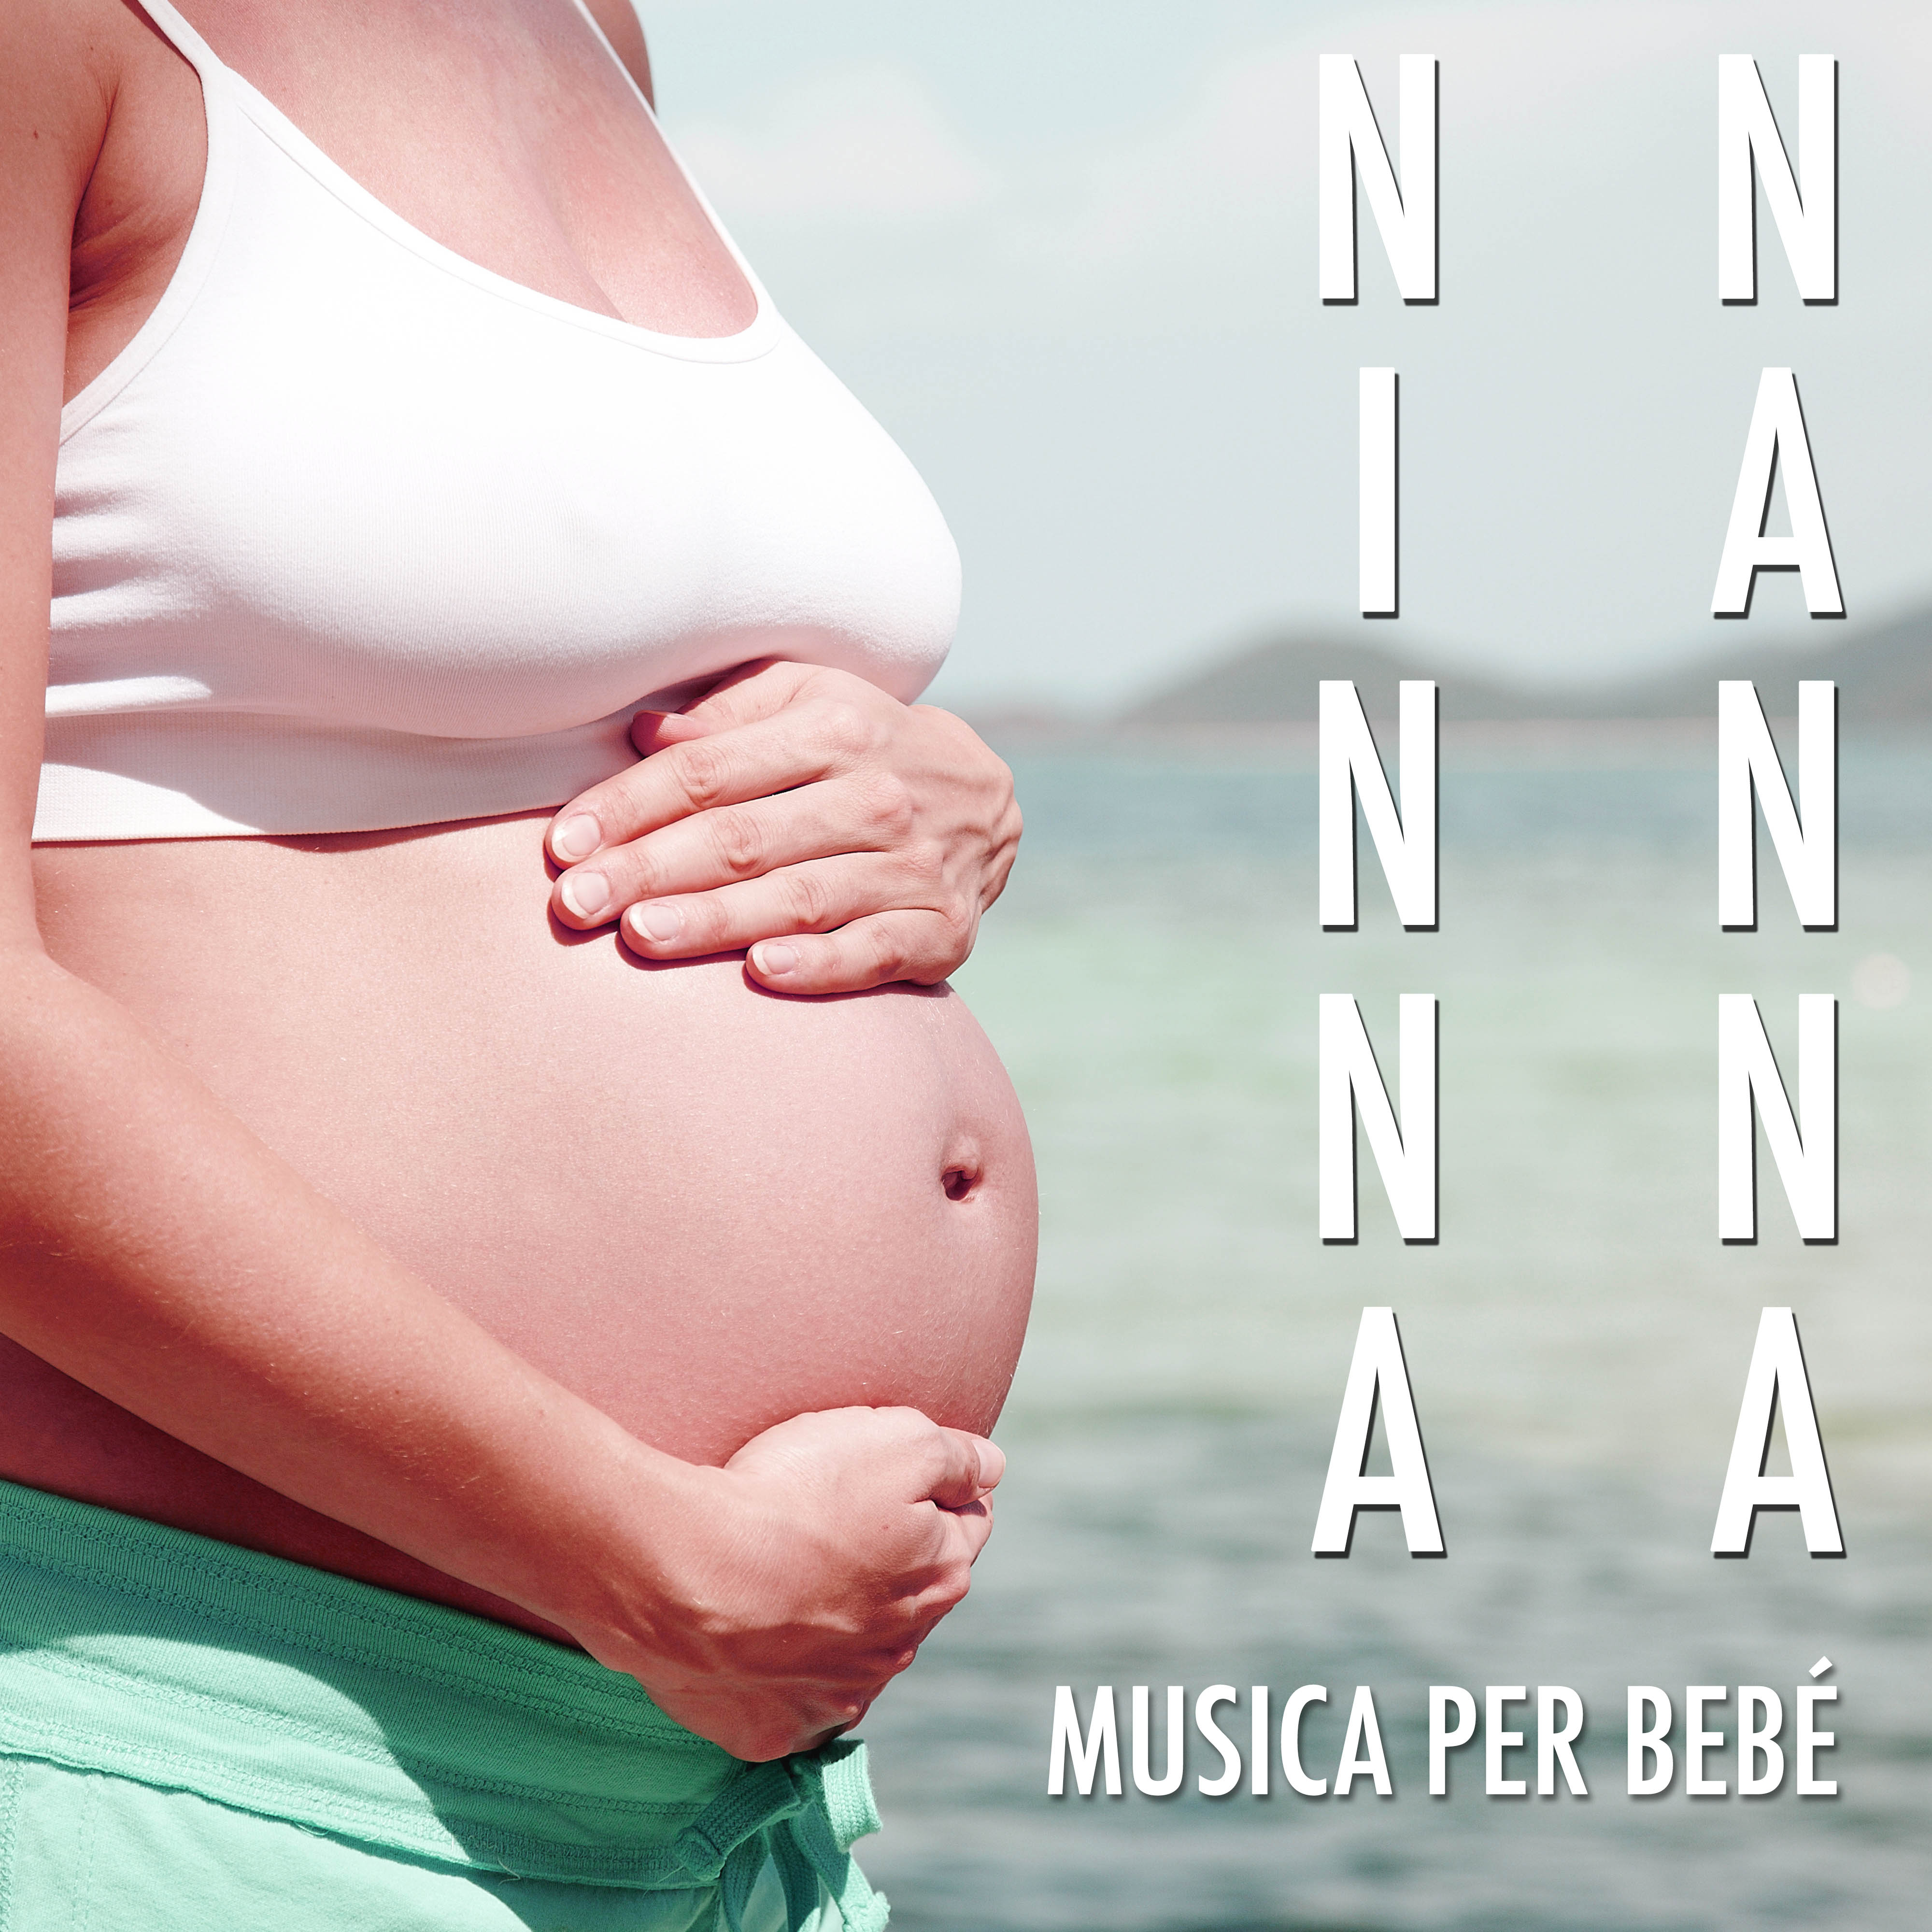 Ninna Nanna Mamma: Canzoni Antistress per Bambini da Ascoltare per Trovare Calma e Rilassamento per Dormire